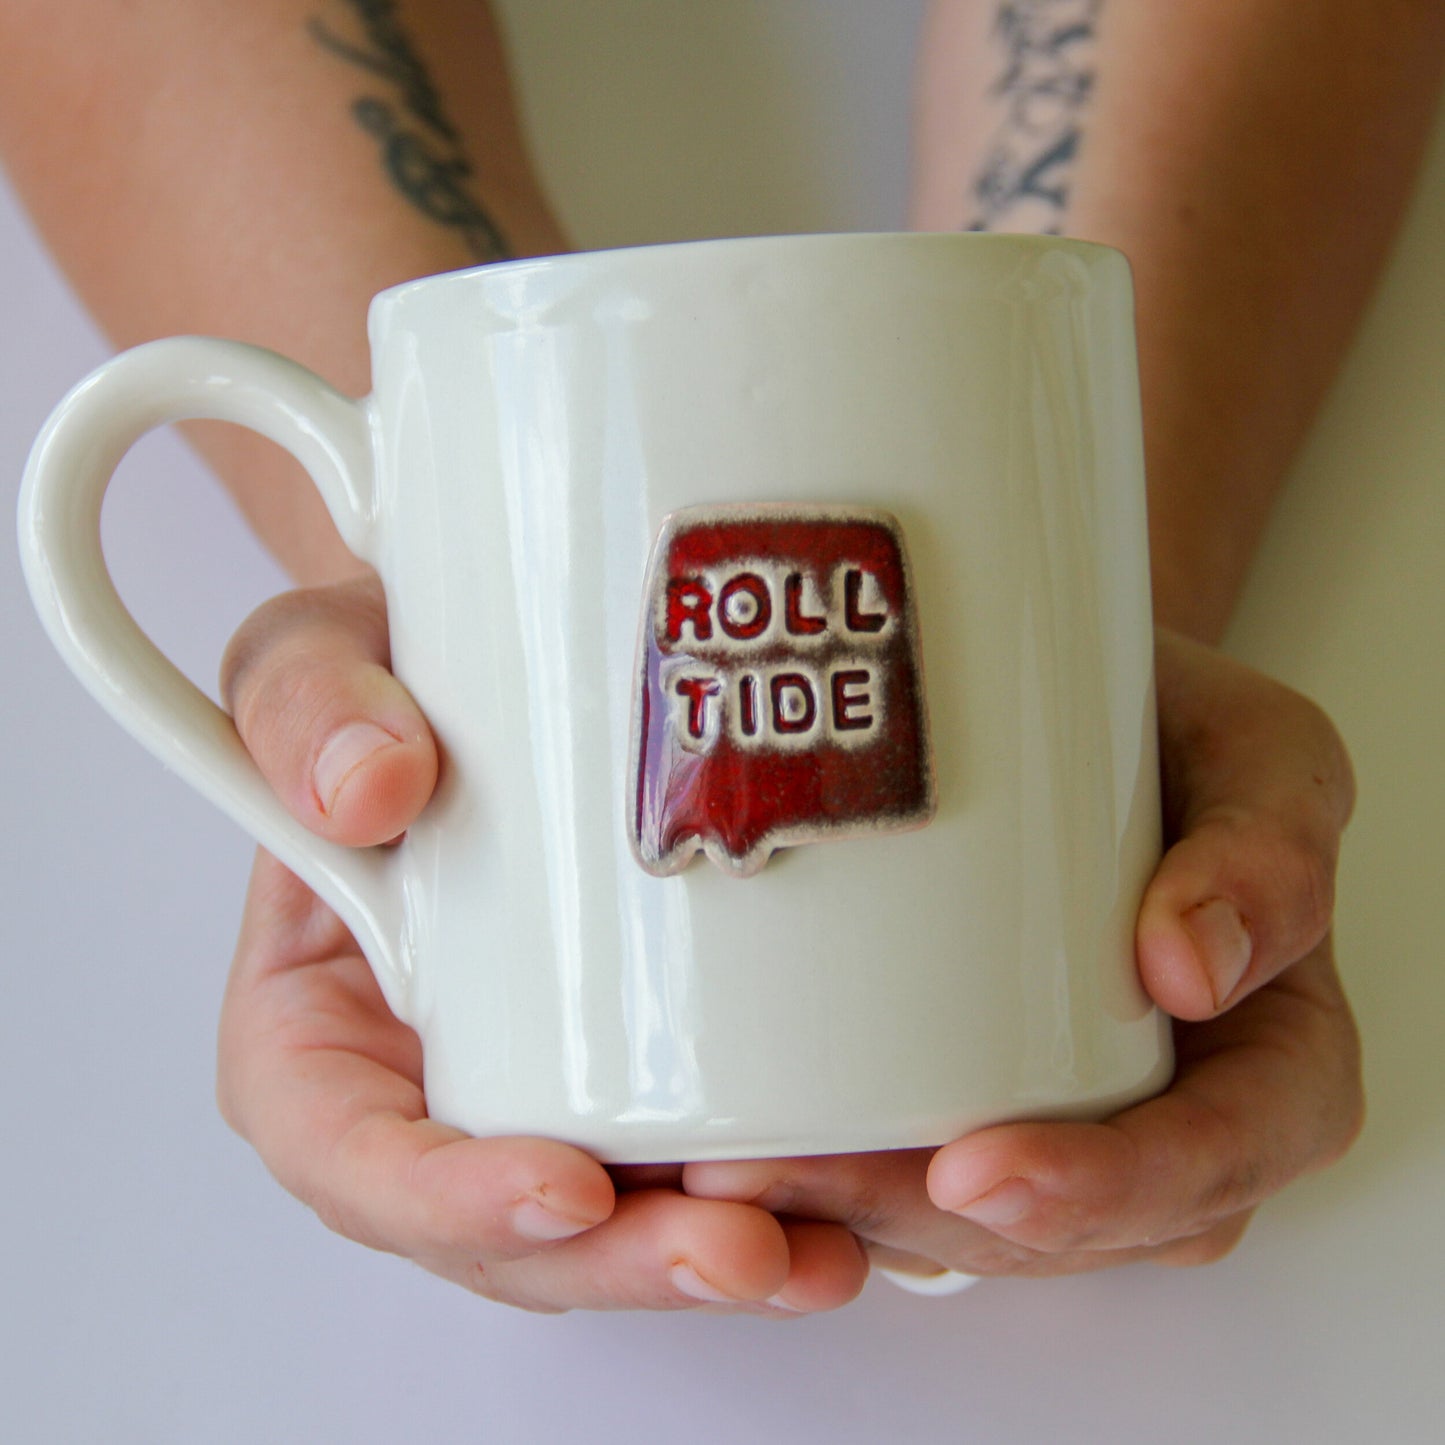 Roll Tide Mug